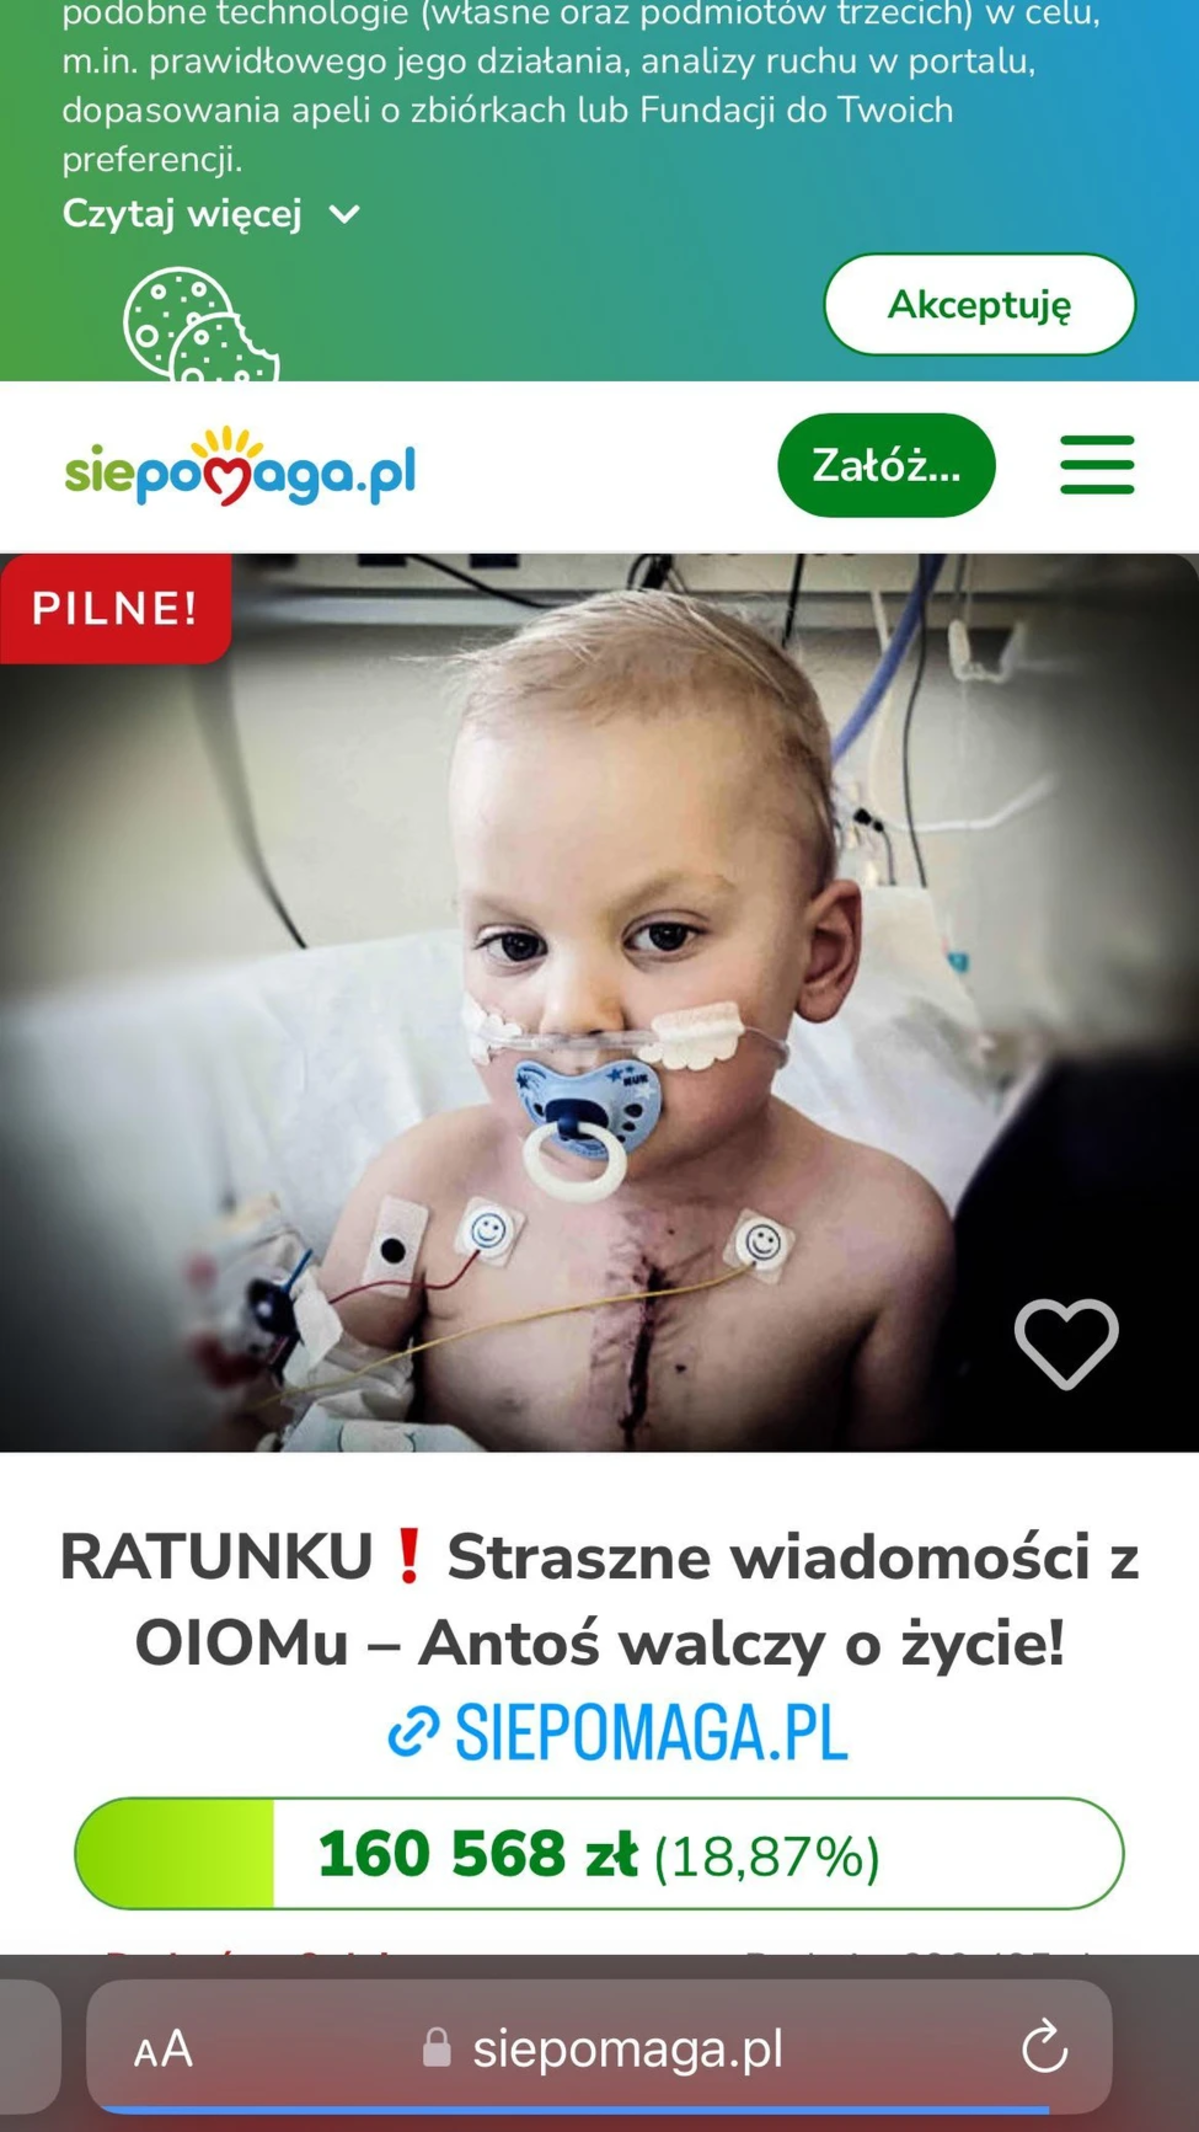 Joanna Opozda apeluje o pomoc dla dziecka